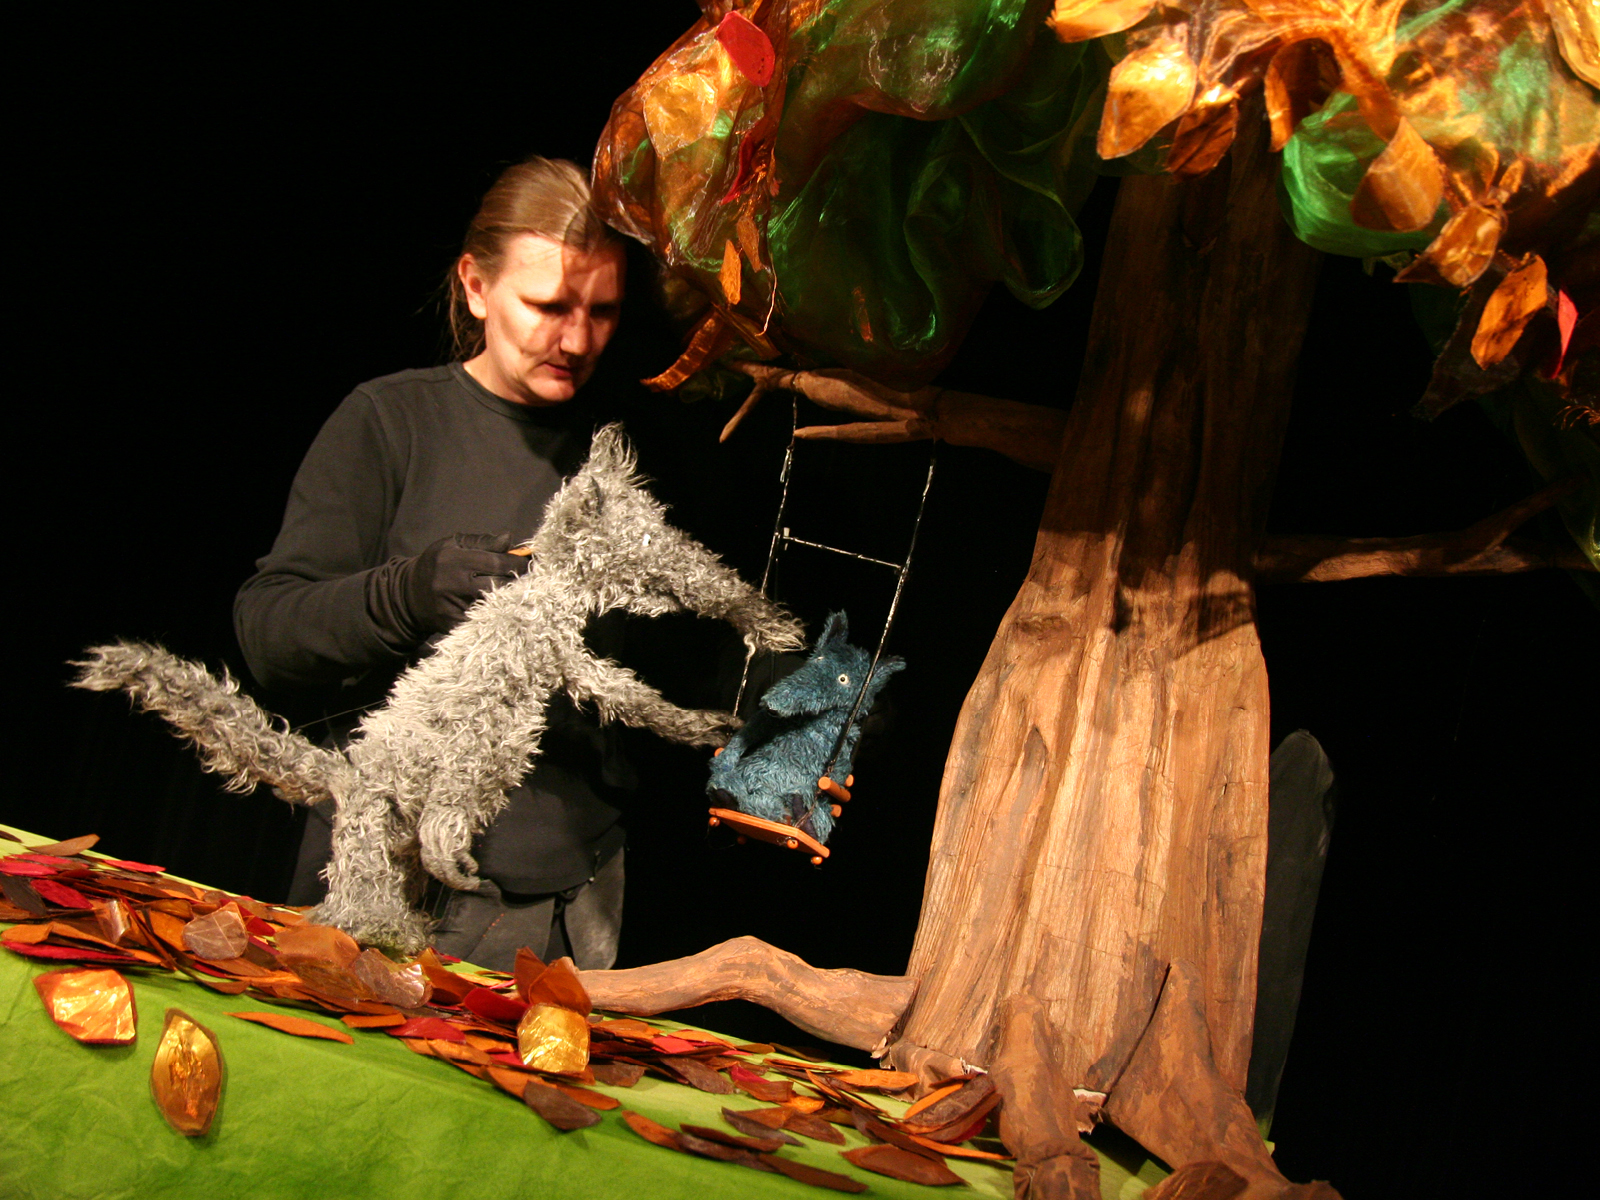 Der große Wolf schubst eine Schaukel an, in dem der kleine Wolf sitzt. Die Schaukel hängt an einem Baum. Hinter den Figuren ist die Puppenspielerin abgebildet.